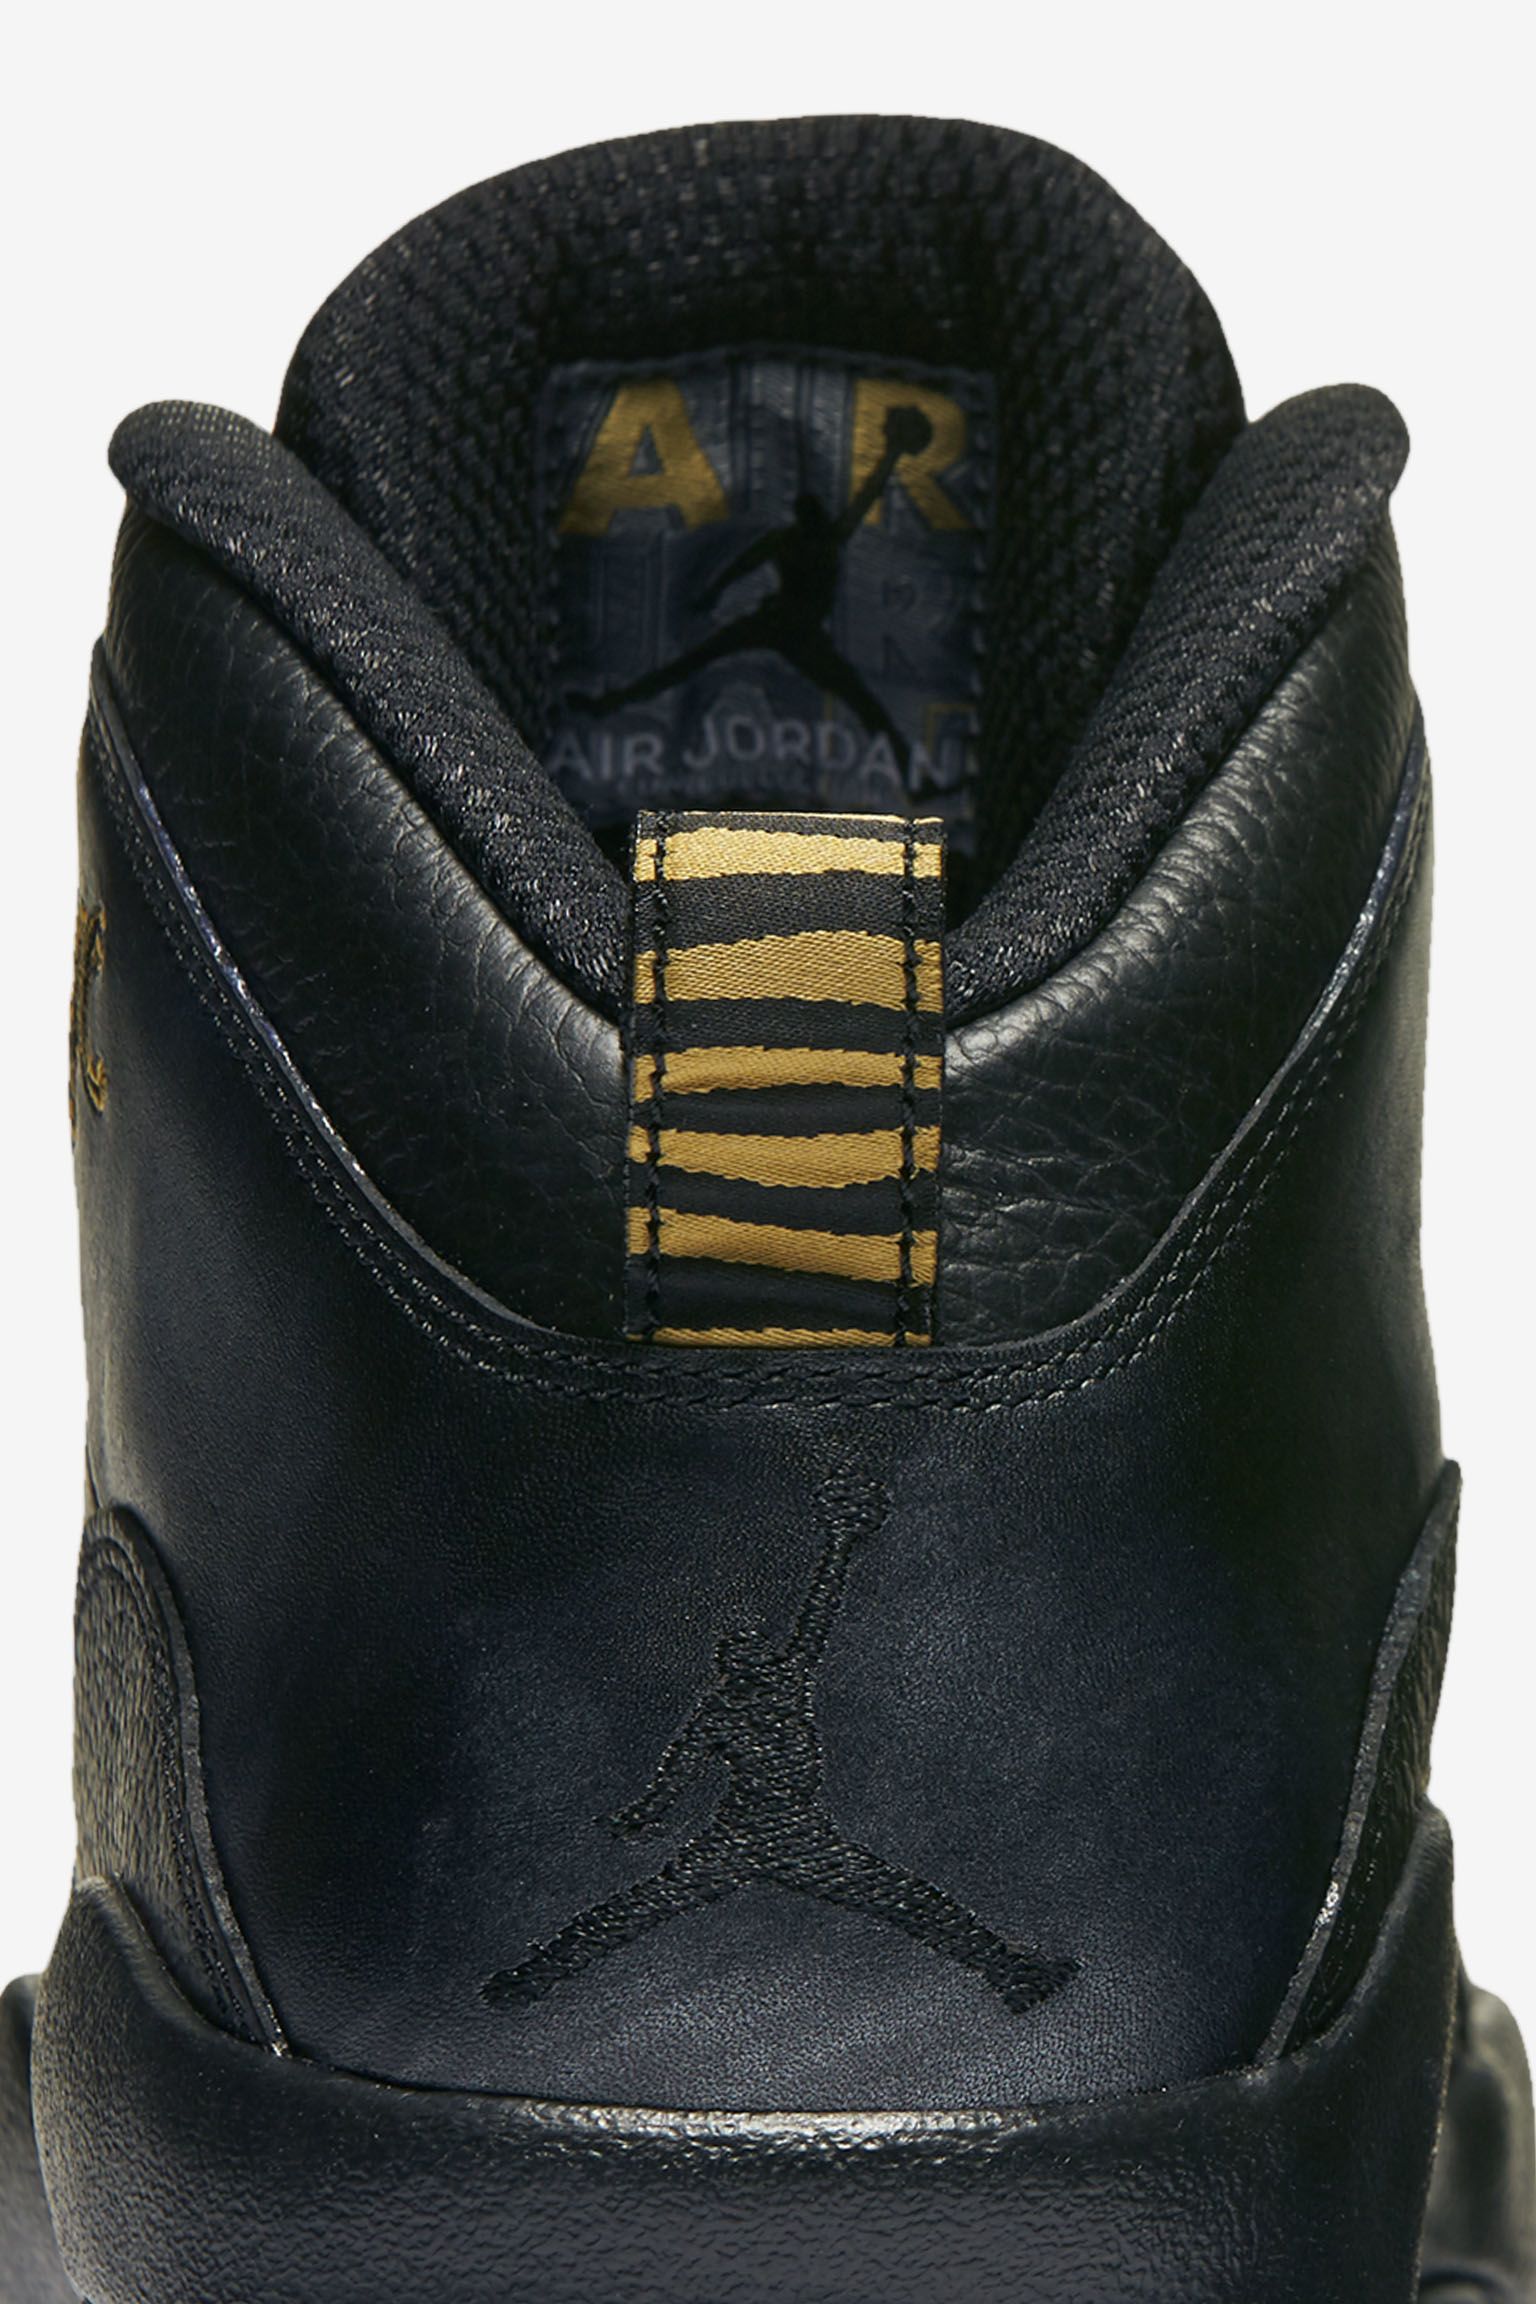 Air Jordan 10 Retro 'NYC' Release Date. Nike SNKRS